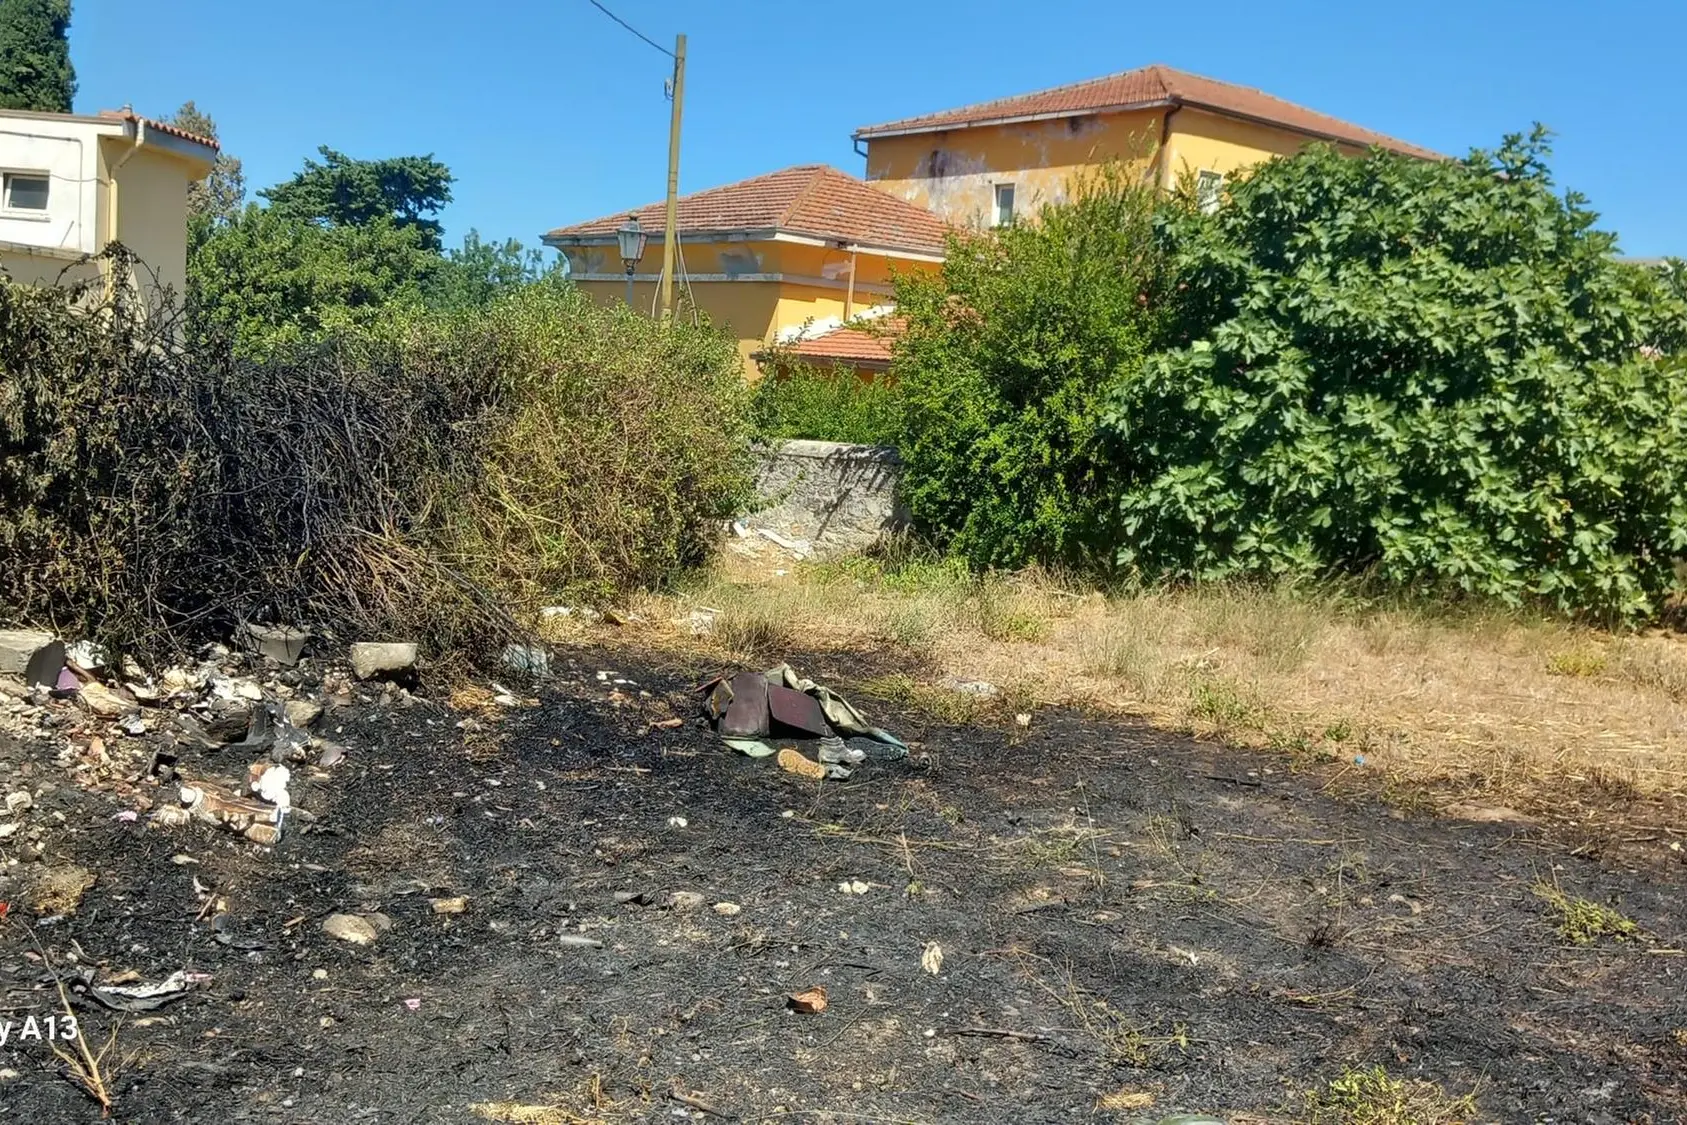 Il terreno danneggiato dal fuoco (Sirigu)